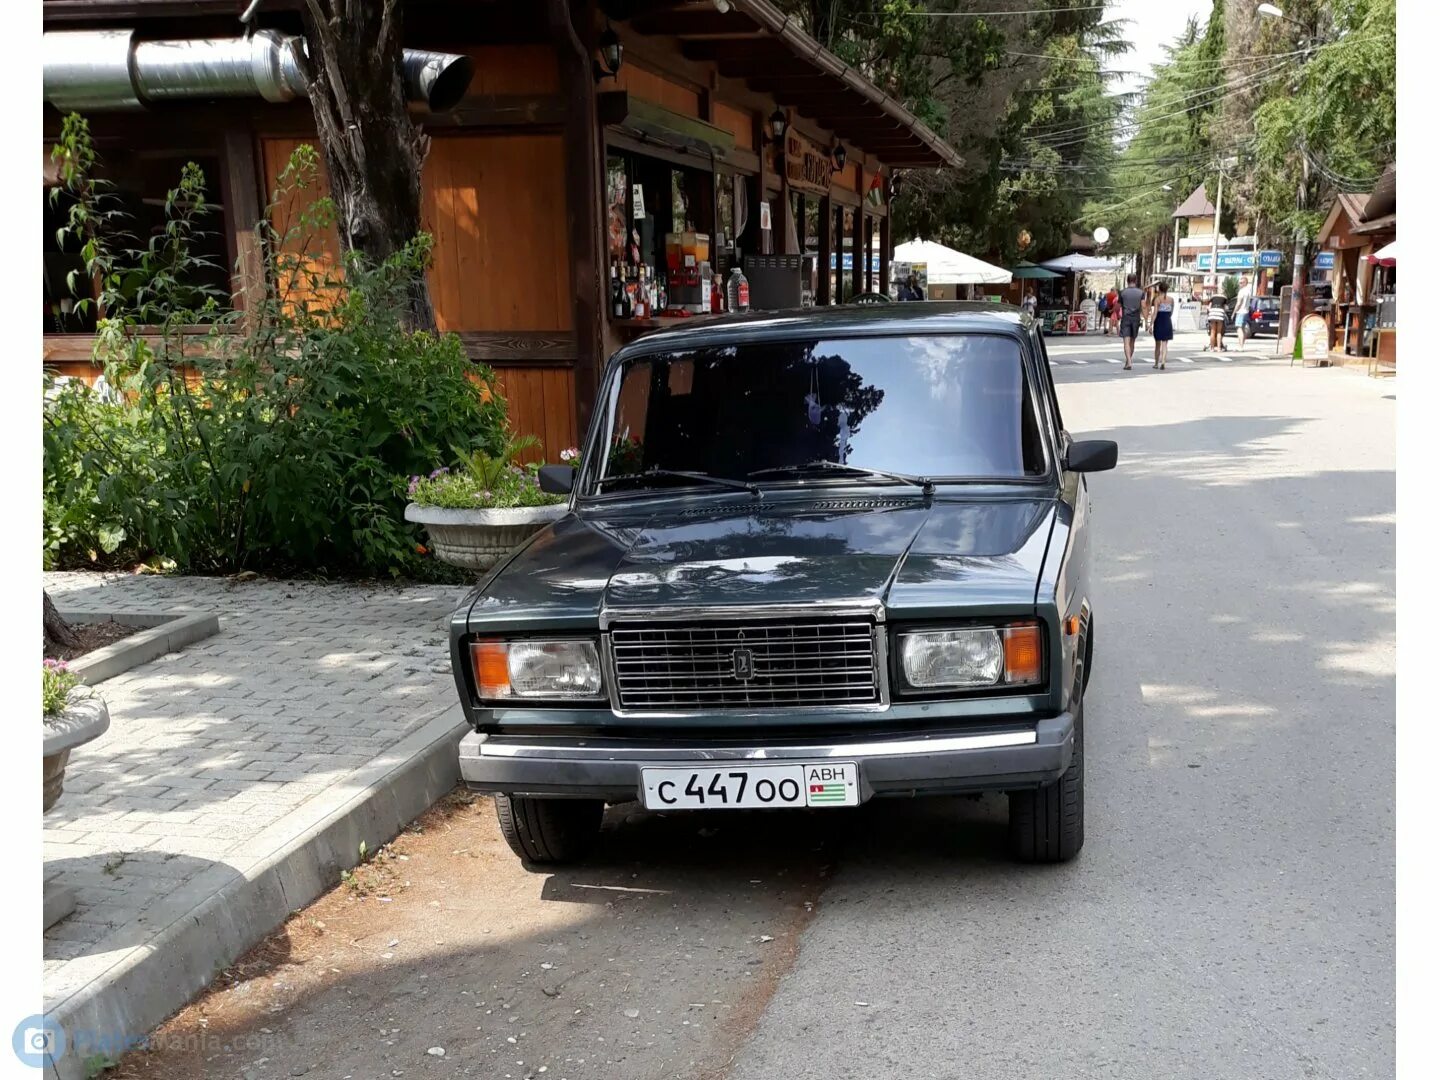 Абхазский учет автомобиля. Номера Абхазии автомобильные. Абхазские номера на авто. Абхазия номера авто. Номера в Абхазии на автомобиле.